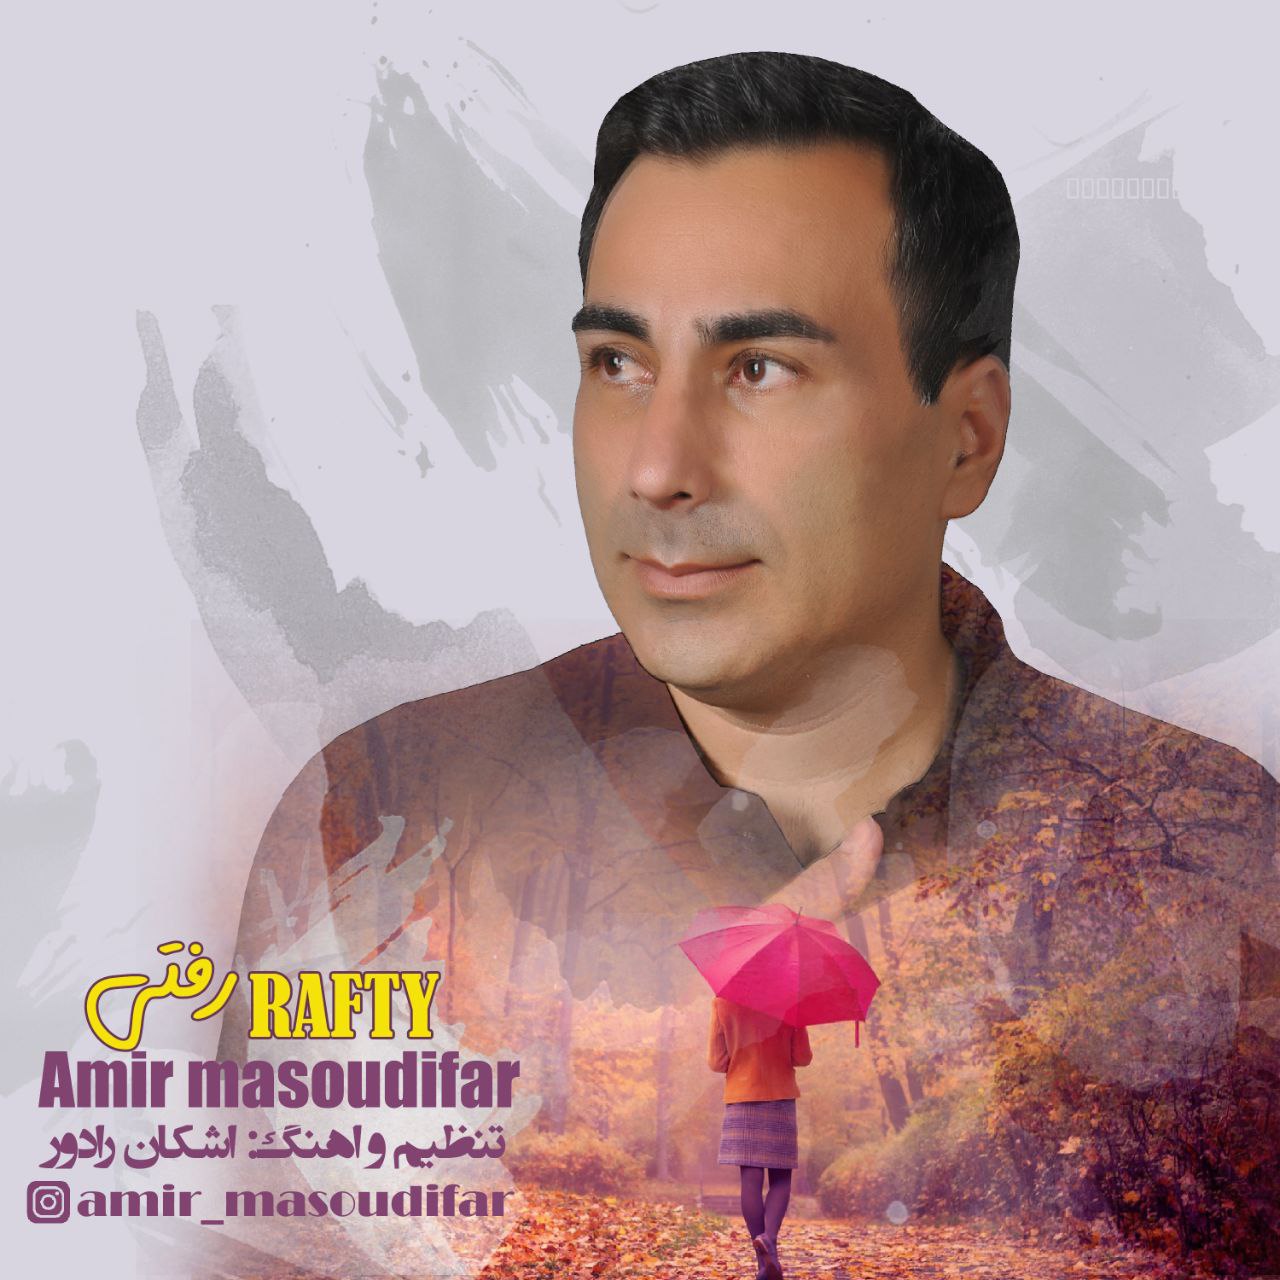 Amir Masoudifar – Rafty